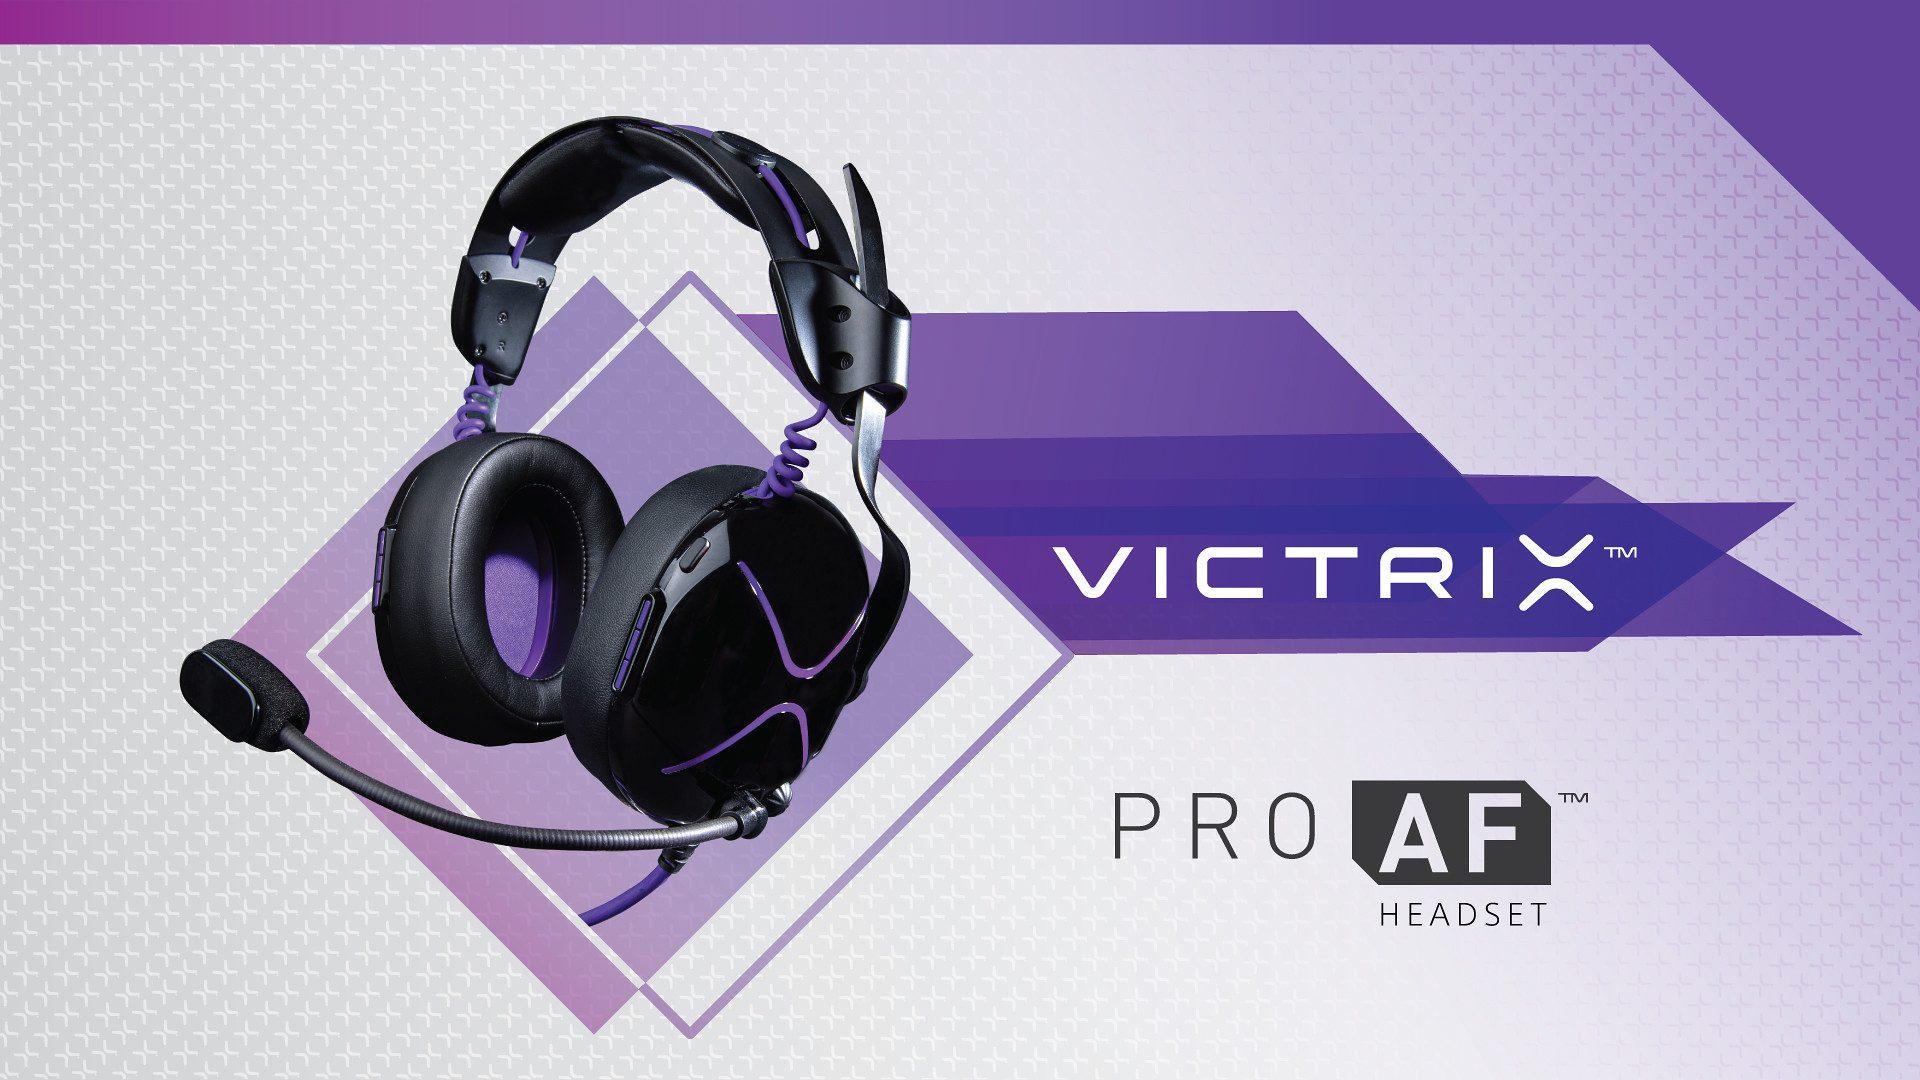 The Victrix Pro AF Headset for PS4 Lands November 8